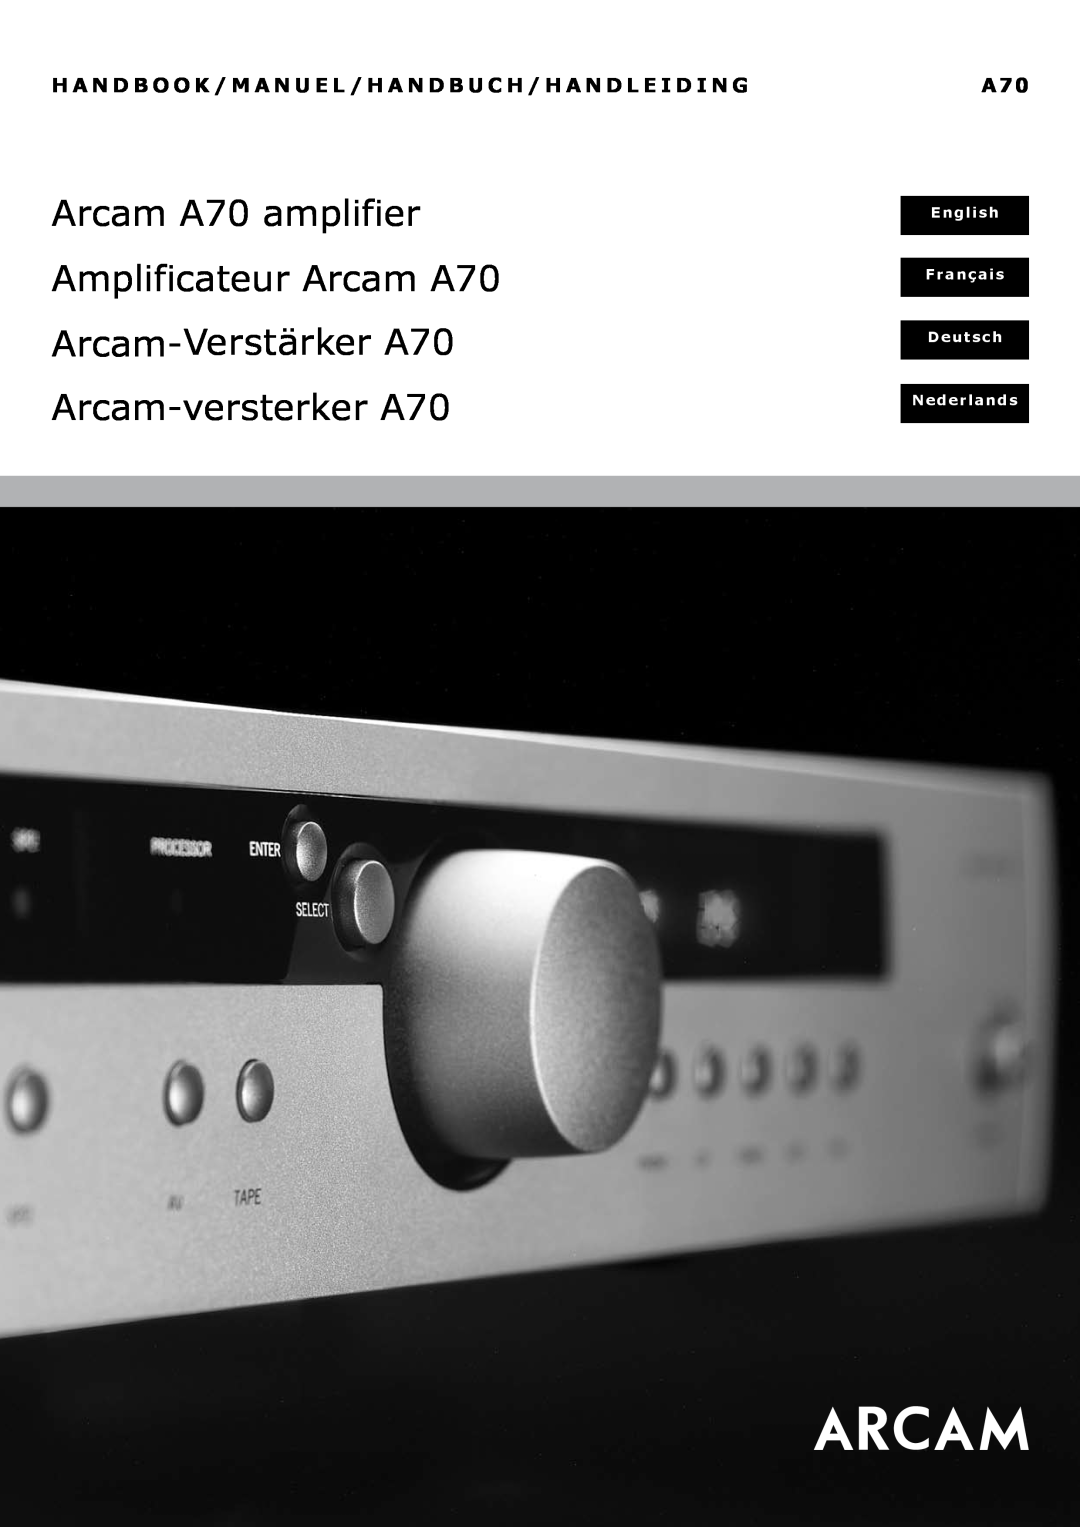 Arcam manual Arcam A70 amplifier, Amplificateur Arcam A70, Verstärker A70, Arcam-versterkerA70, English, Français 